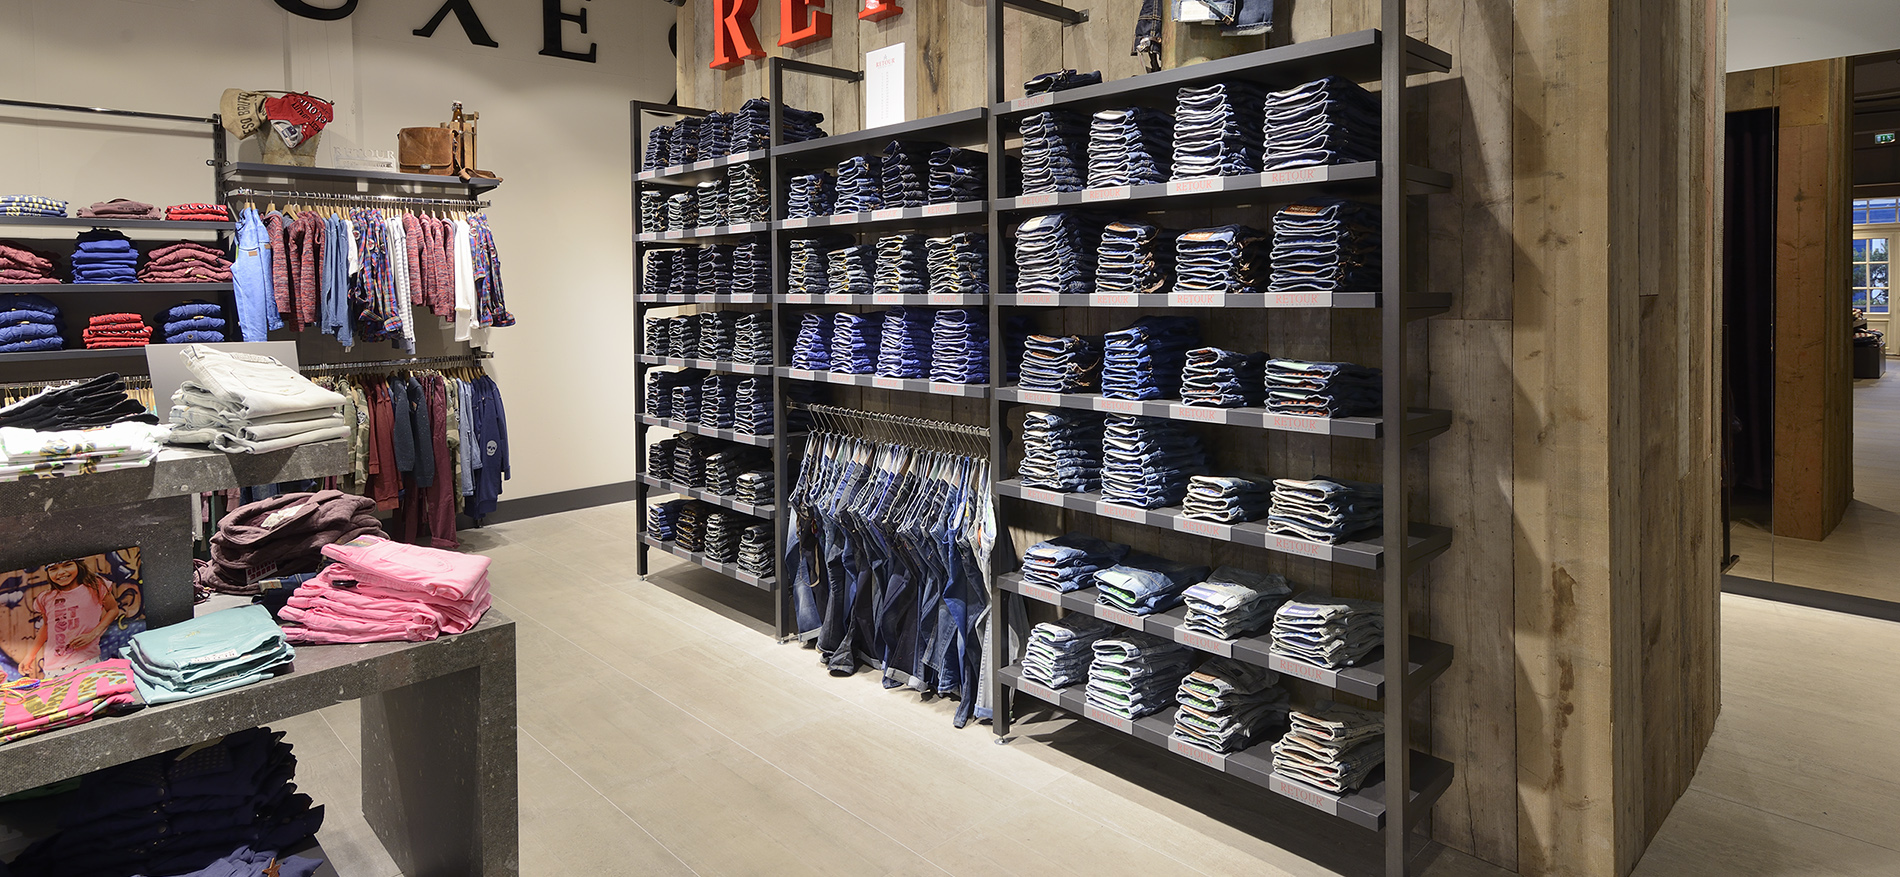 Shop in shop Konzept Mode >> Retour Jeans - Mode